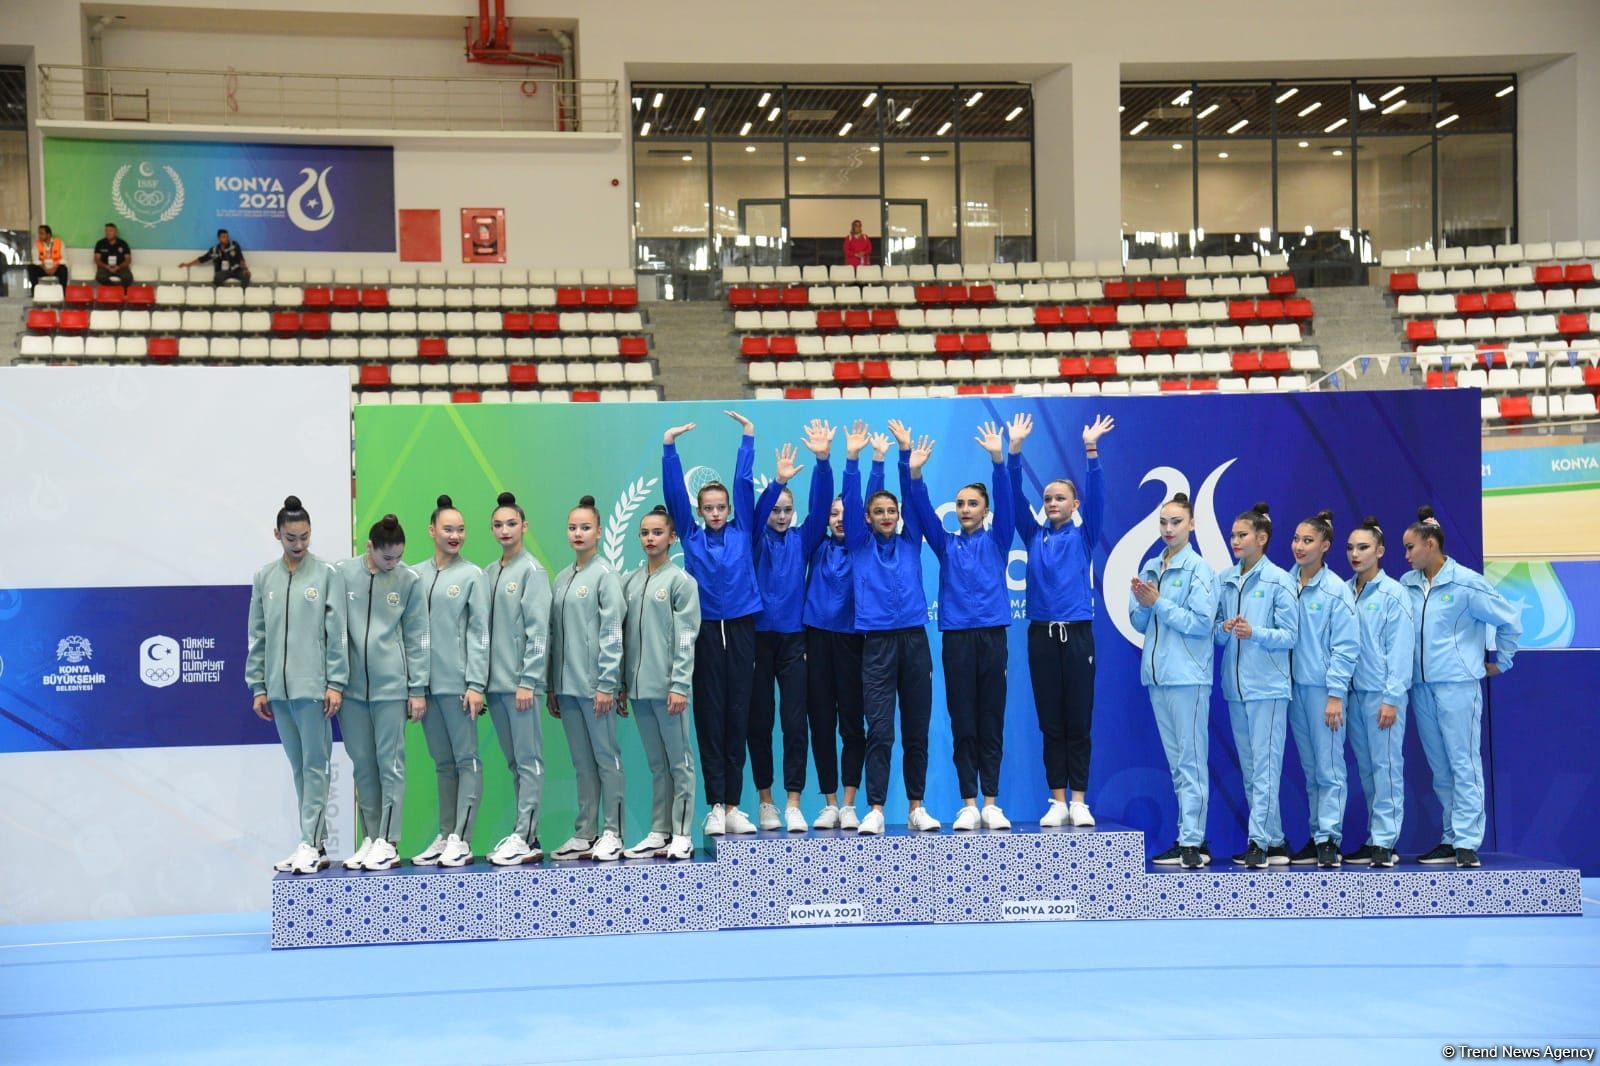 Групповая команда Азербайджана по художественной гимнастике завоевала "золото" Исламиады (ФОТО)